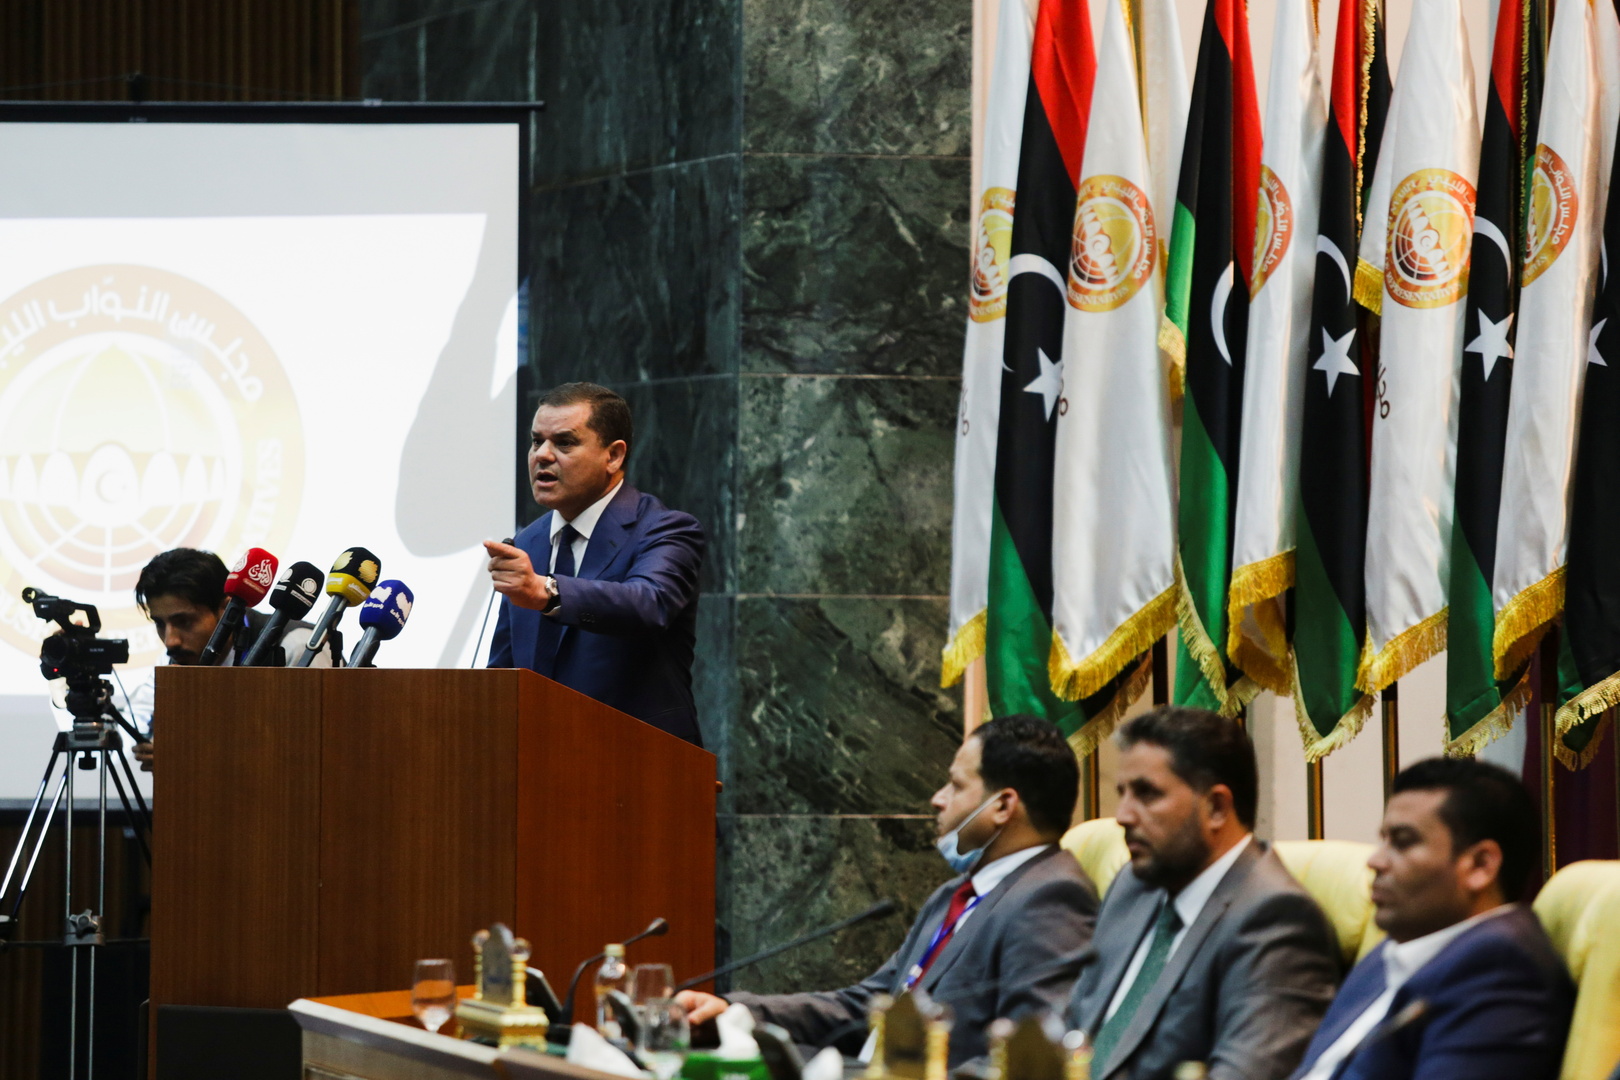 زلة لسان نائب رئيس الحكومة الليبية خلال قسم اليمين تثير صخبا بالبرلمان